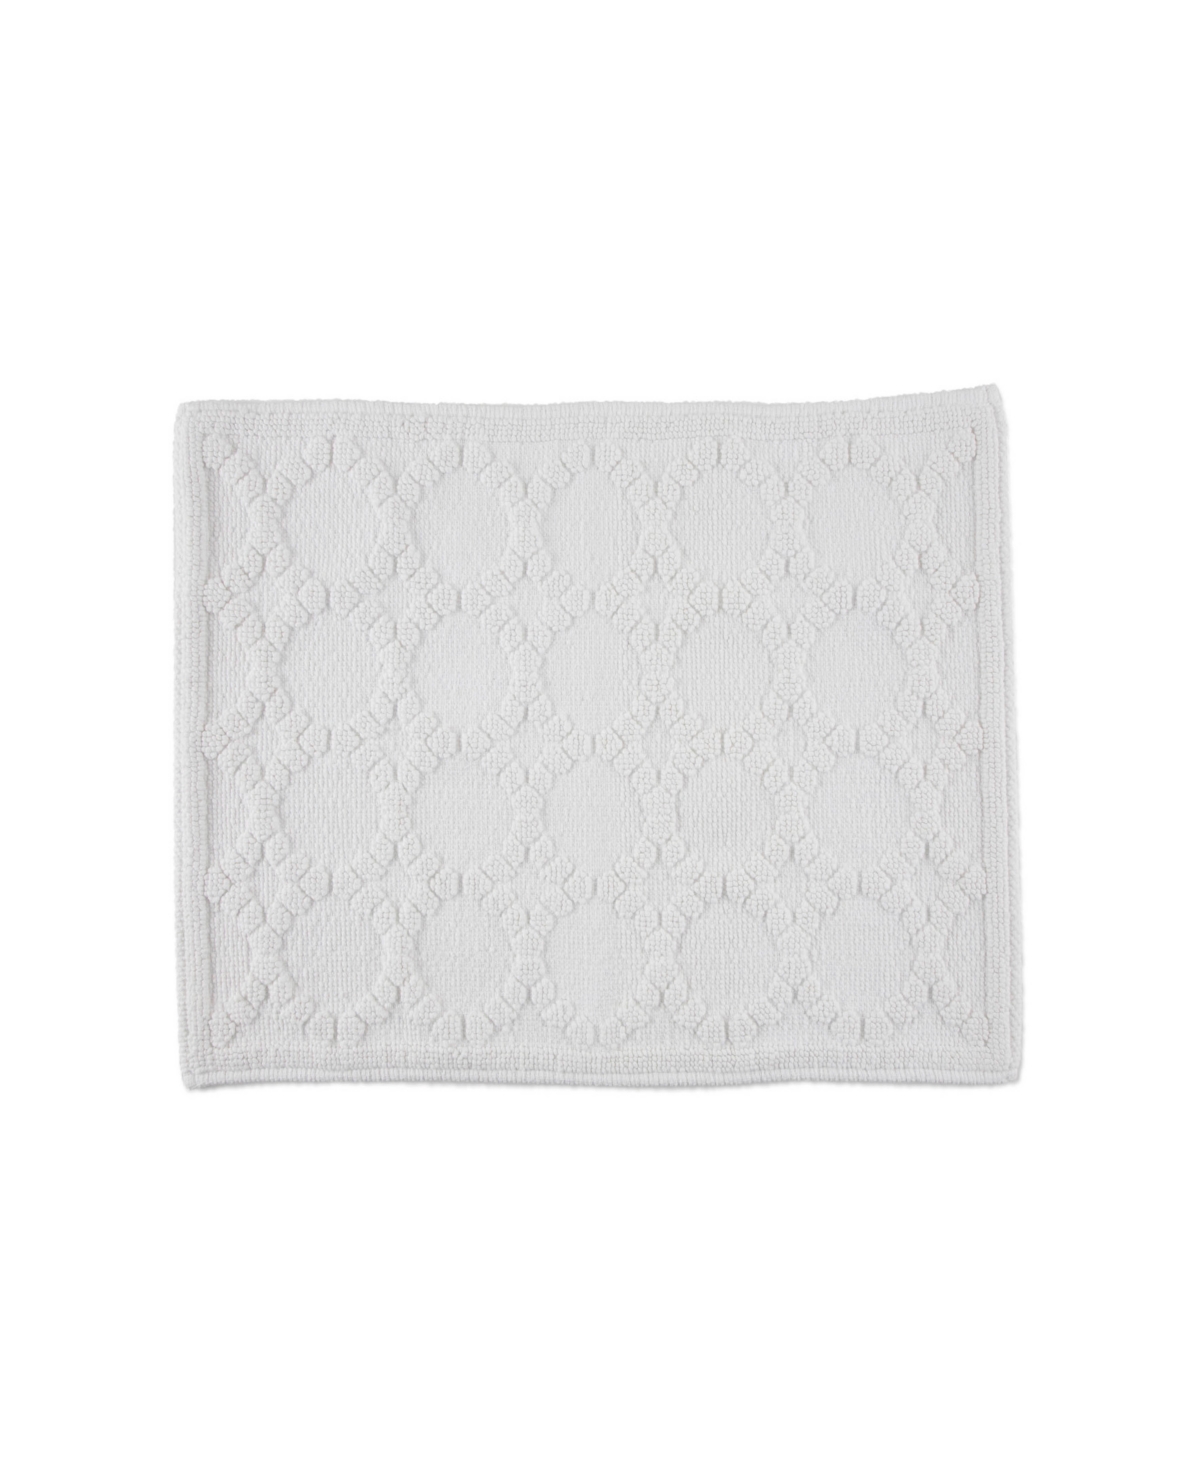 Clean Design Home X Martex Allergen-resistant Savoy Bath Rug, 20" X 30" In White